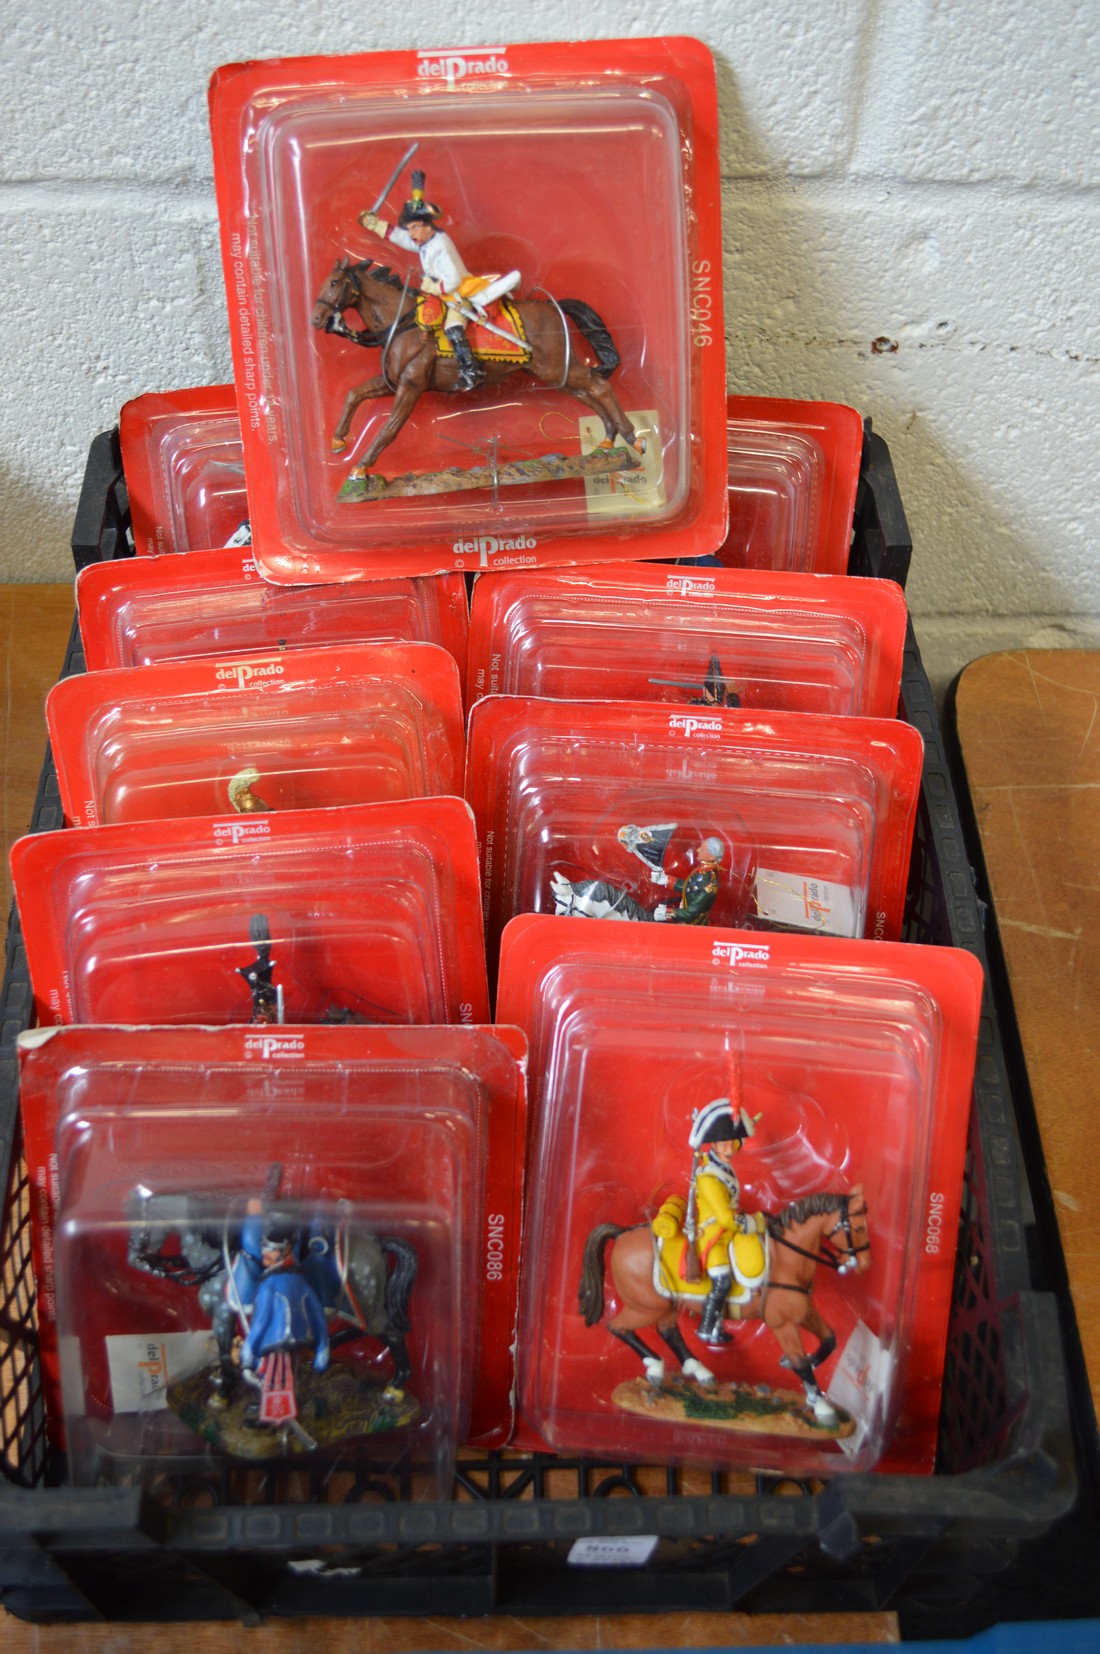 Del Prado, twenty military figures on horseback in blister packs, unopened.